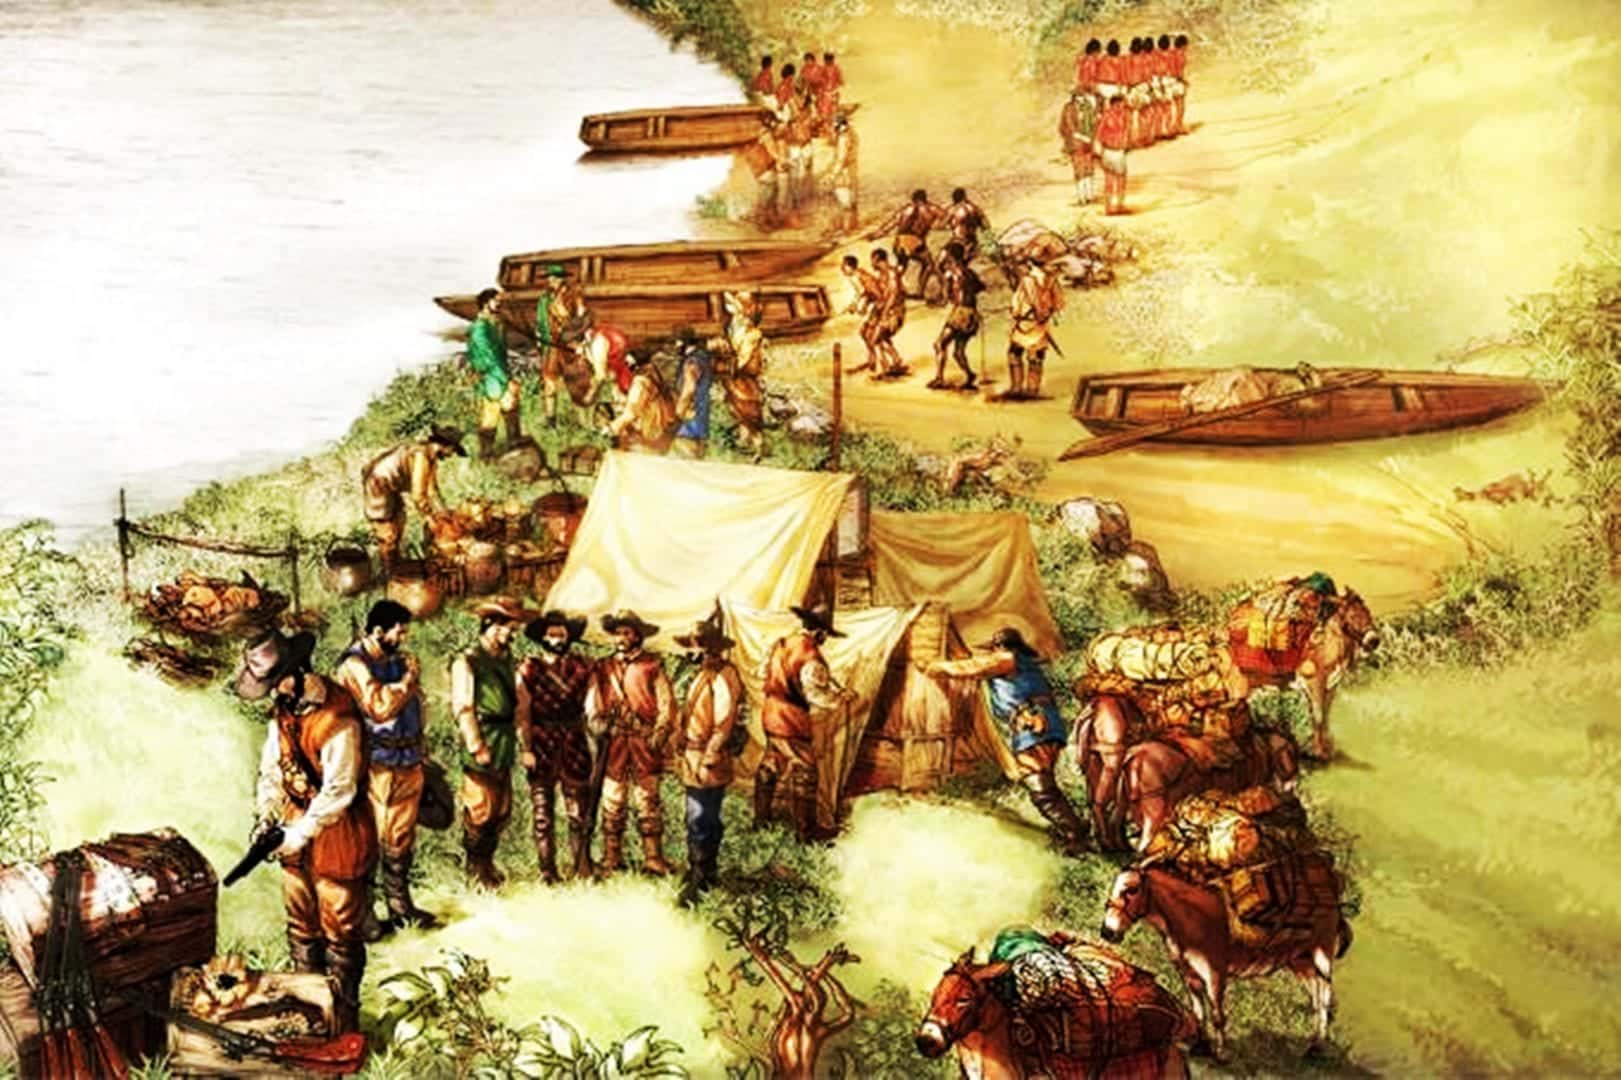 A Guerra dos Manaus foi uma reação dos índios contra a escravidão